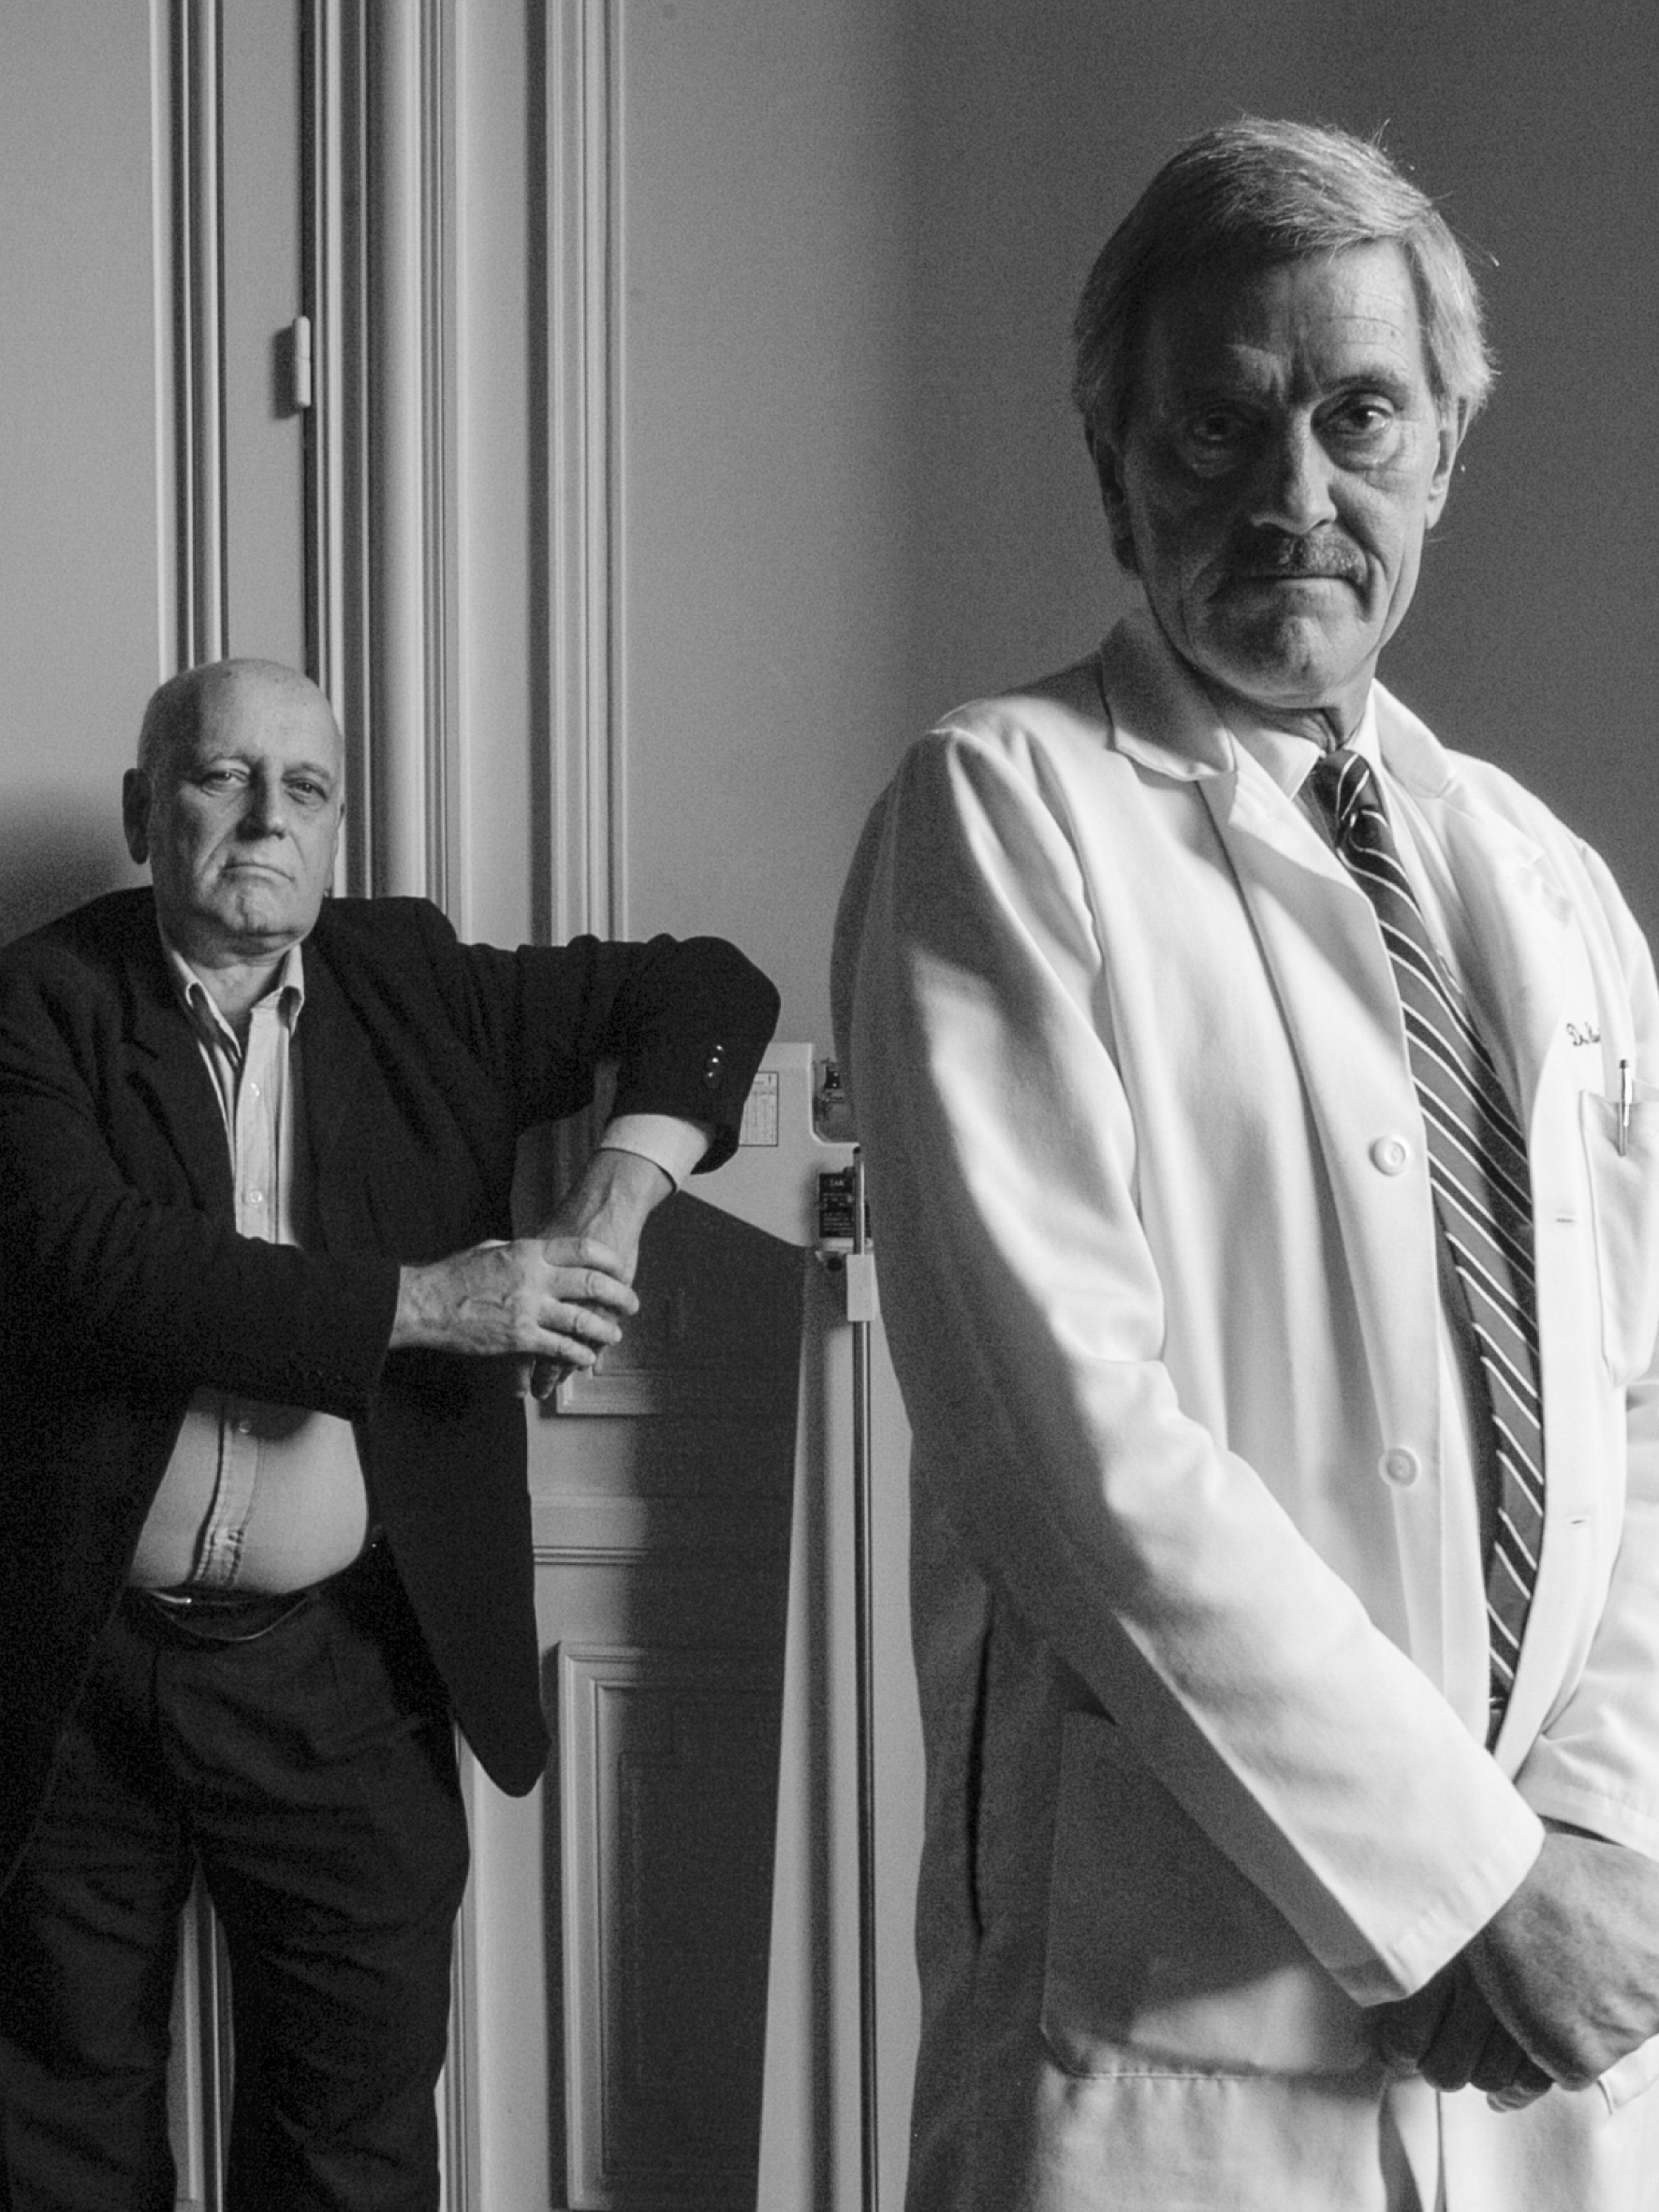 Obra: "Cozarinsky y su médico" (2005)